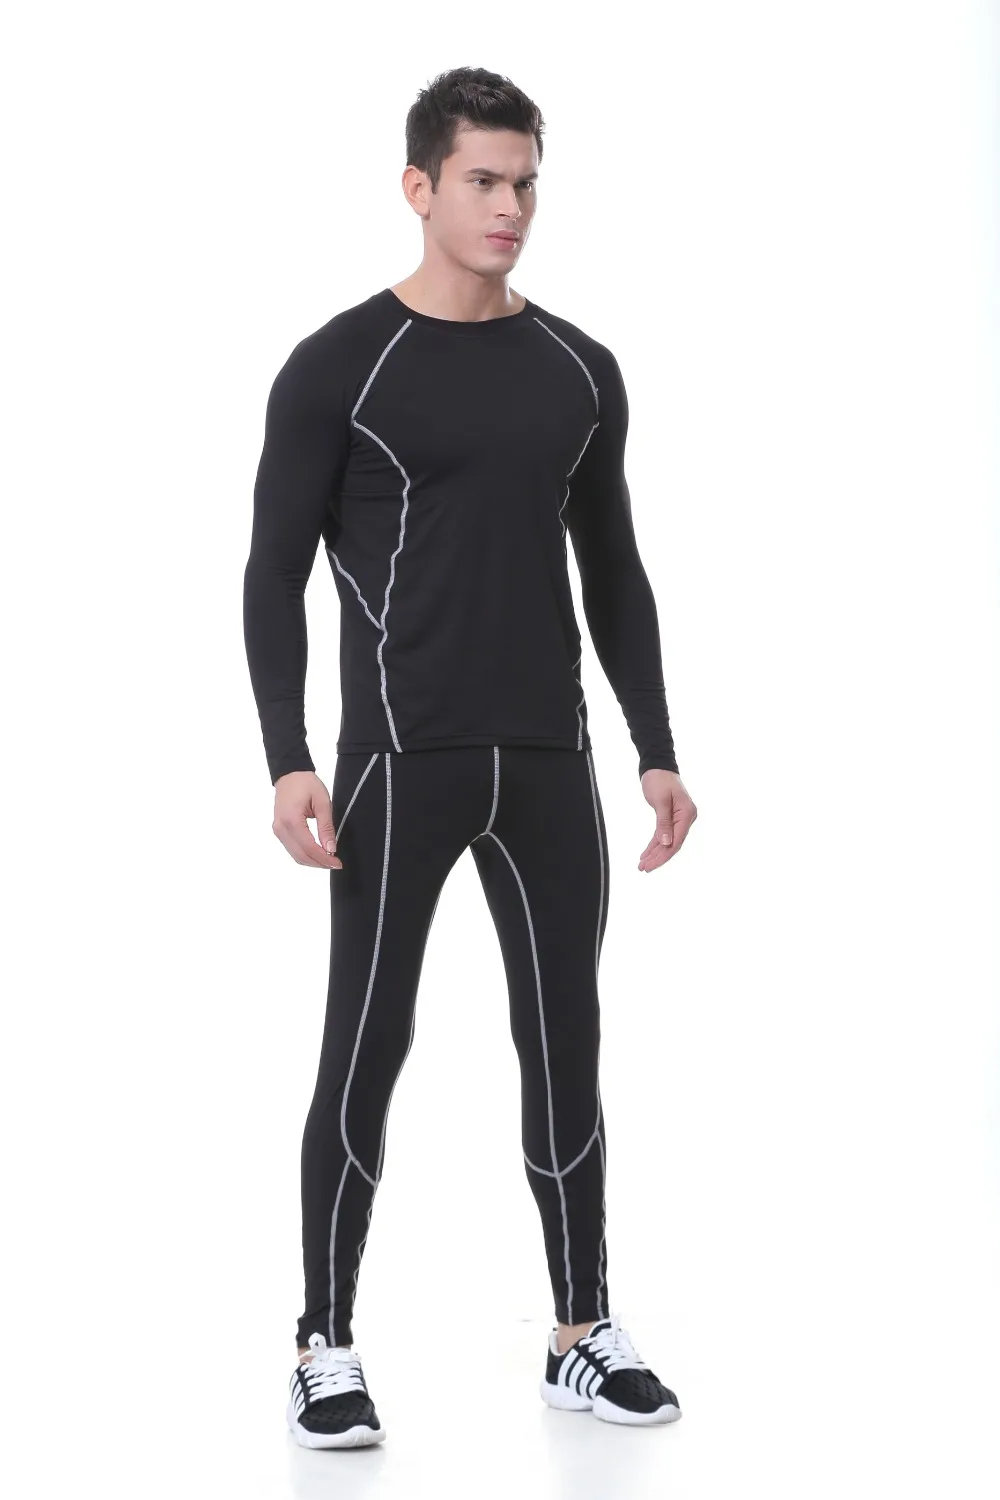 Новое мужское термобелье для мужчин, длинные домашние костюмы Jhons, облегающие тонкие 3 цвета, доступные размеры s, m, l, xl